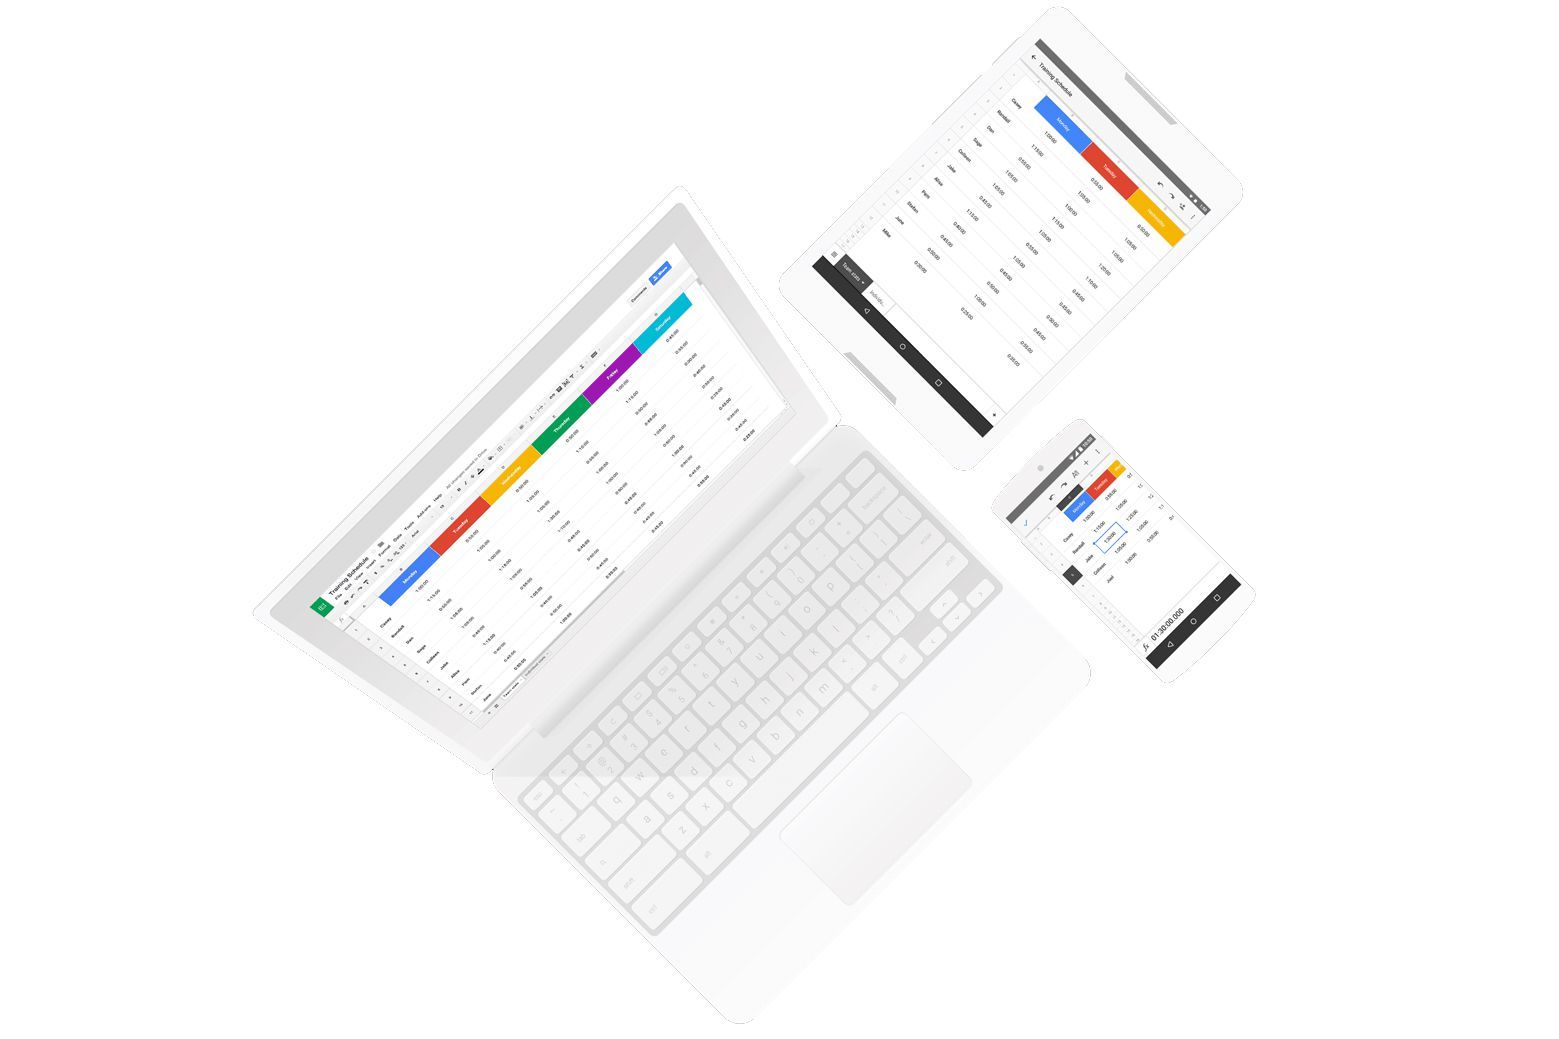 Изображение ноутбука, планшета и смартфона, каждый из которых использует Google Sheets